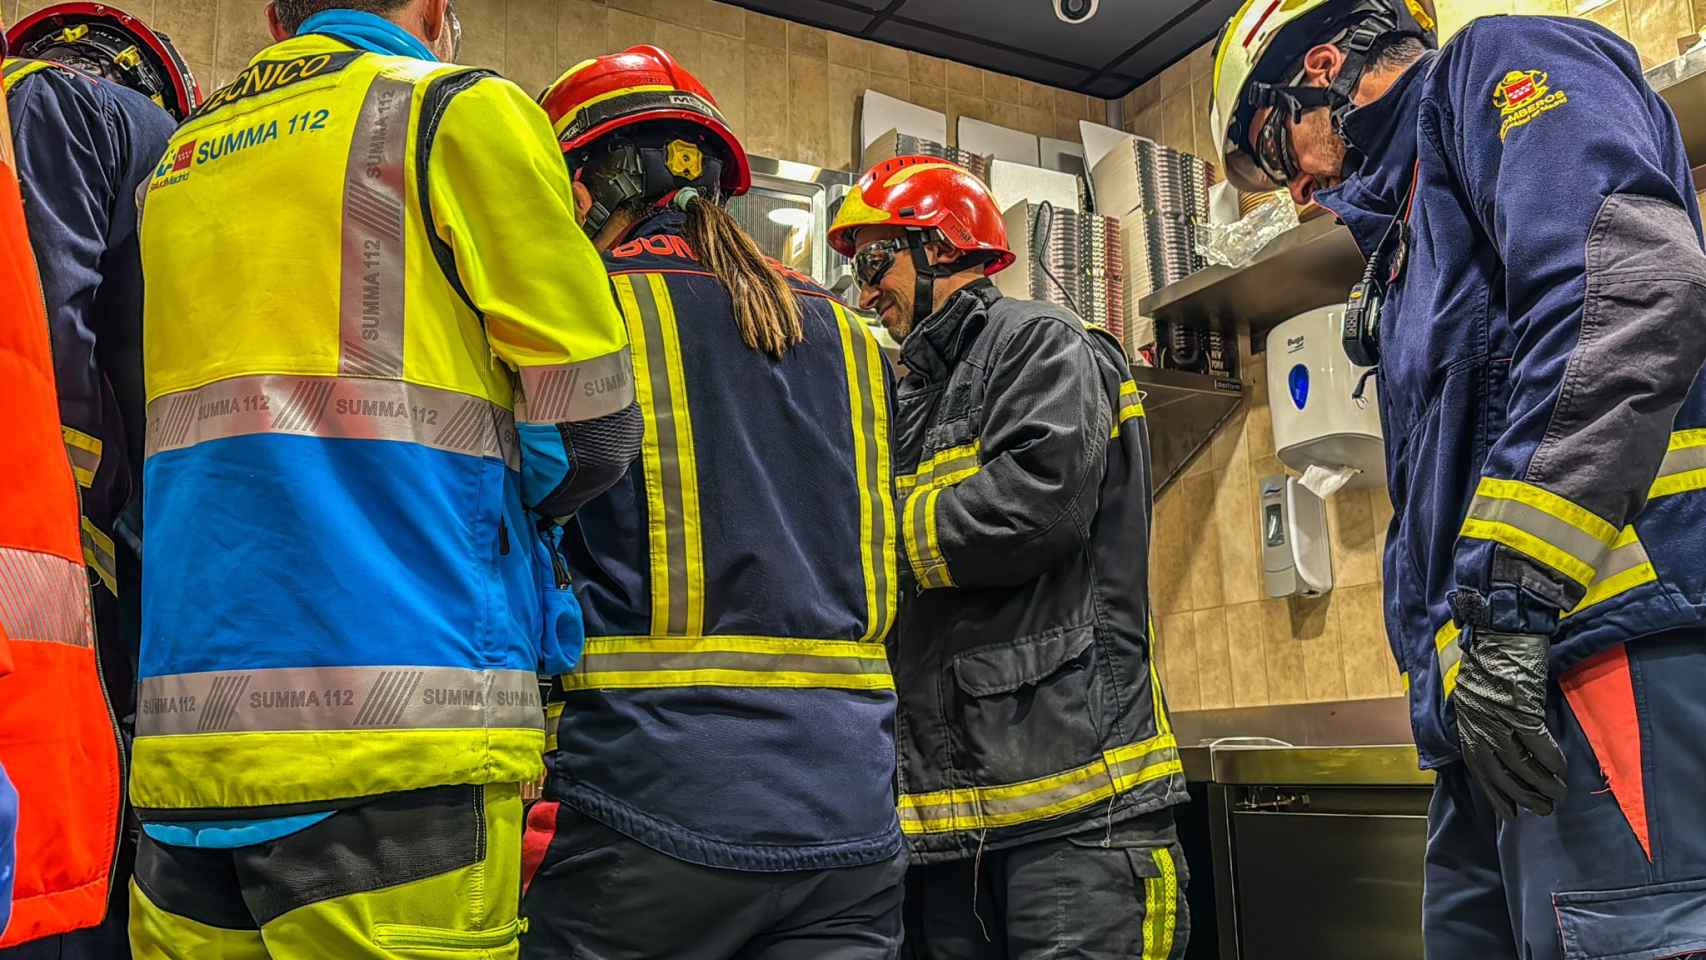 Los bomberos tratando de rescatar la mano del trabajador atrapada en un restaurante.